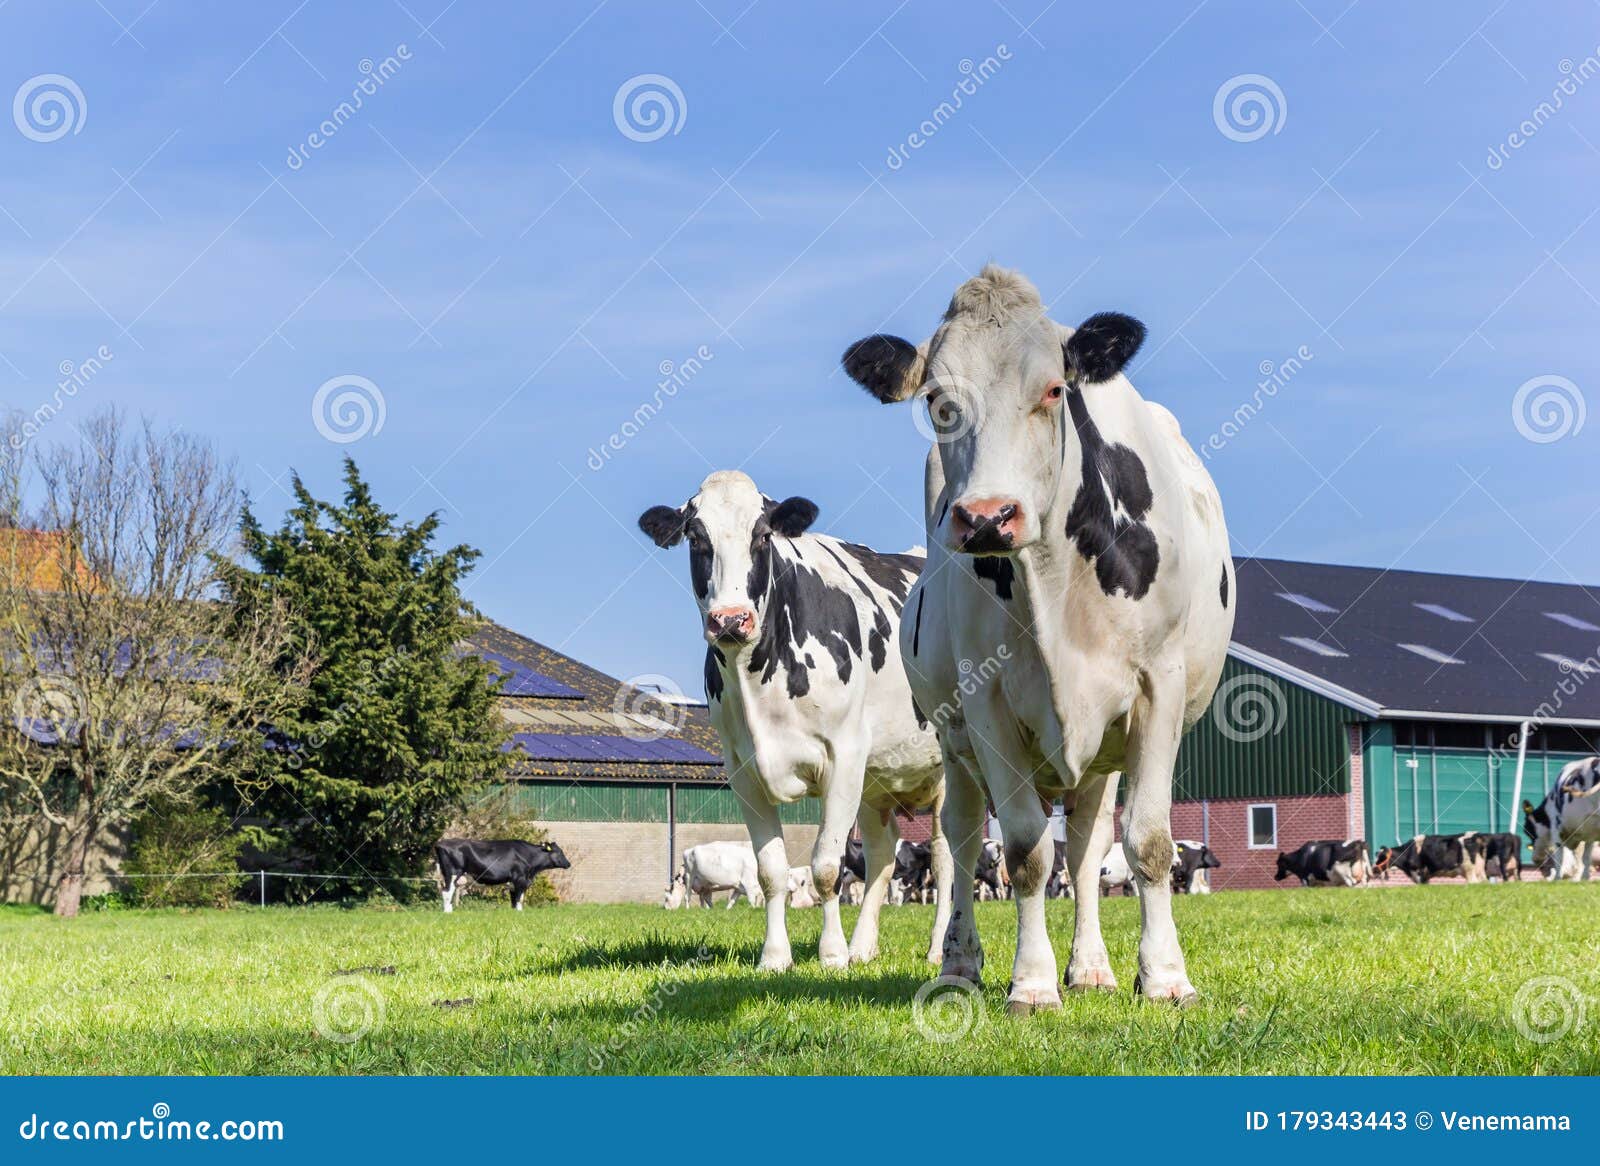 holstein cows at a farm in gaasterland